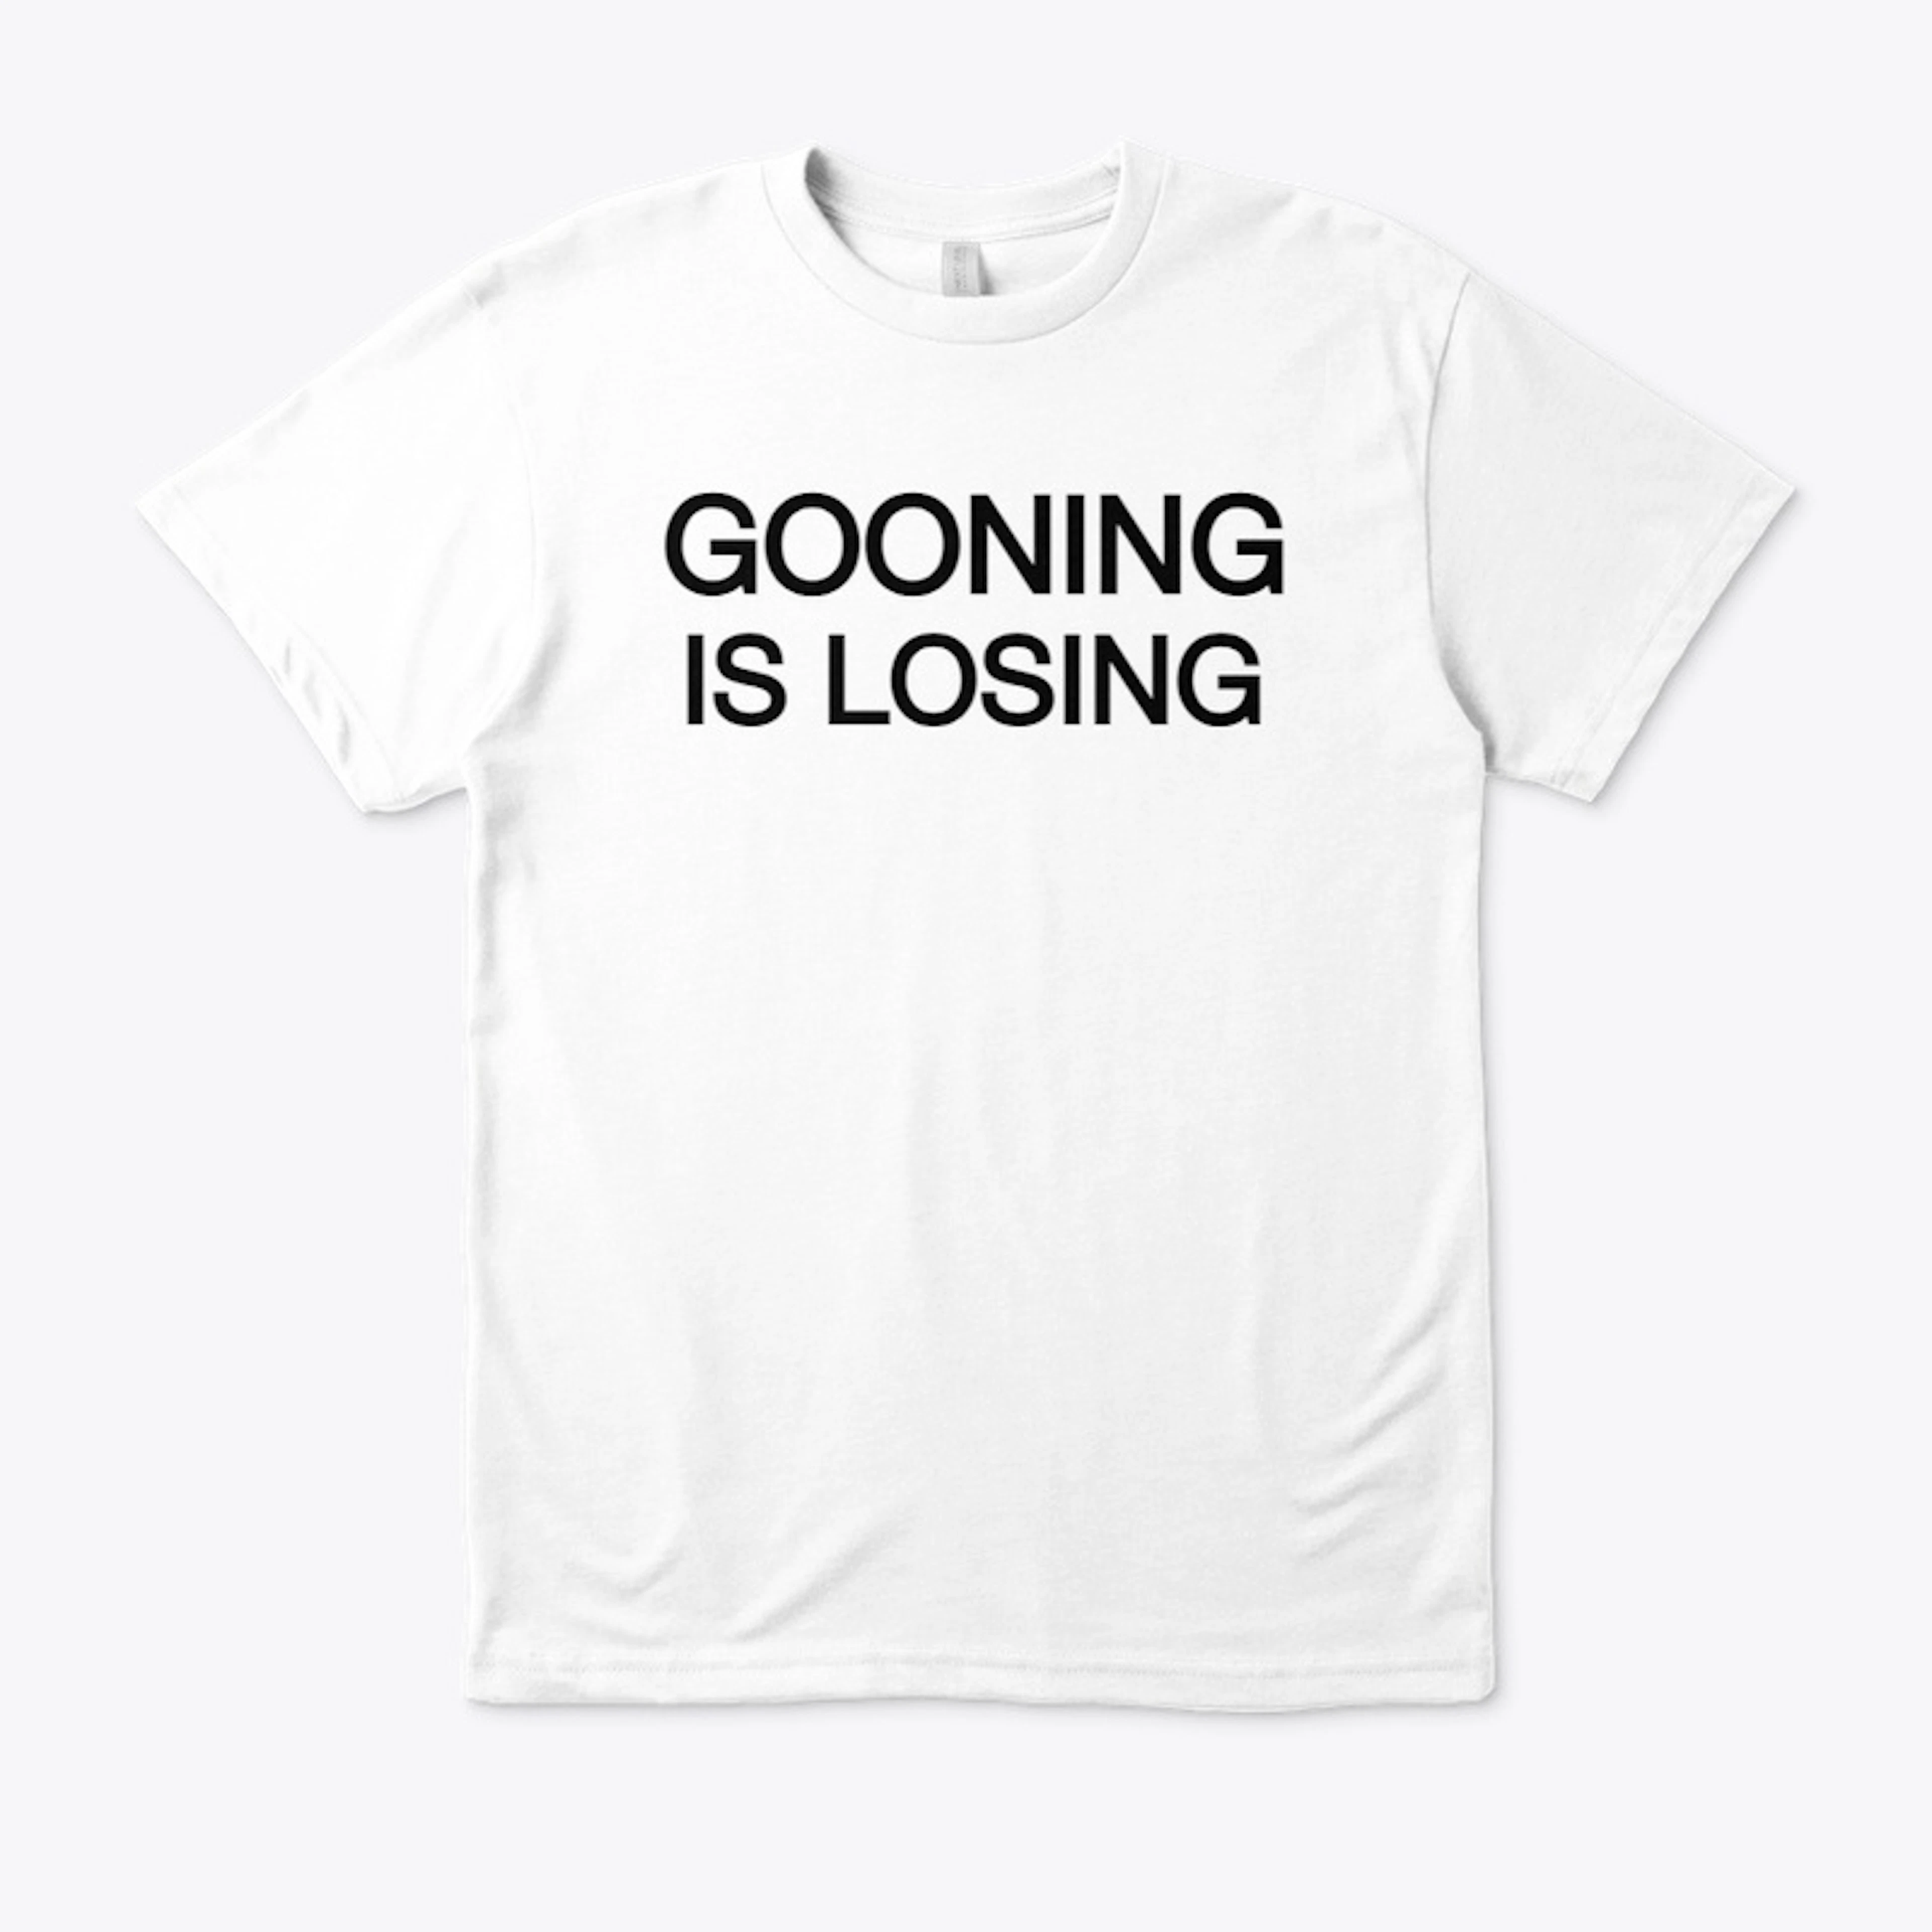 Gooning is losing